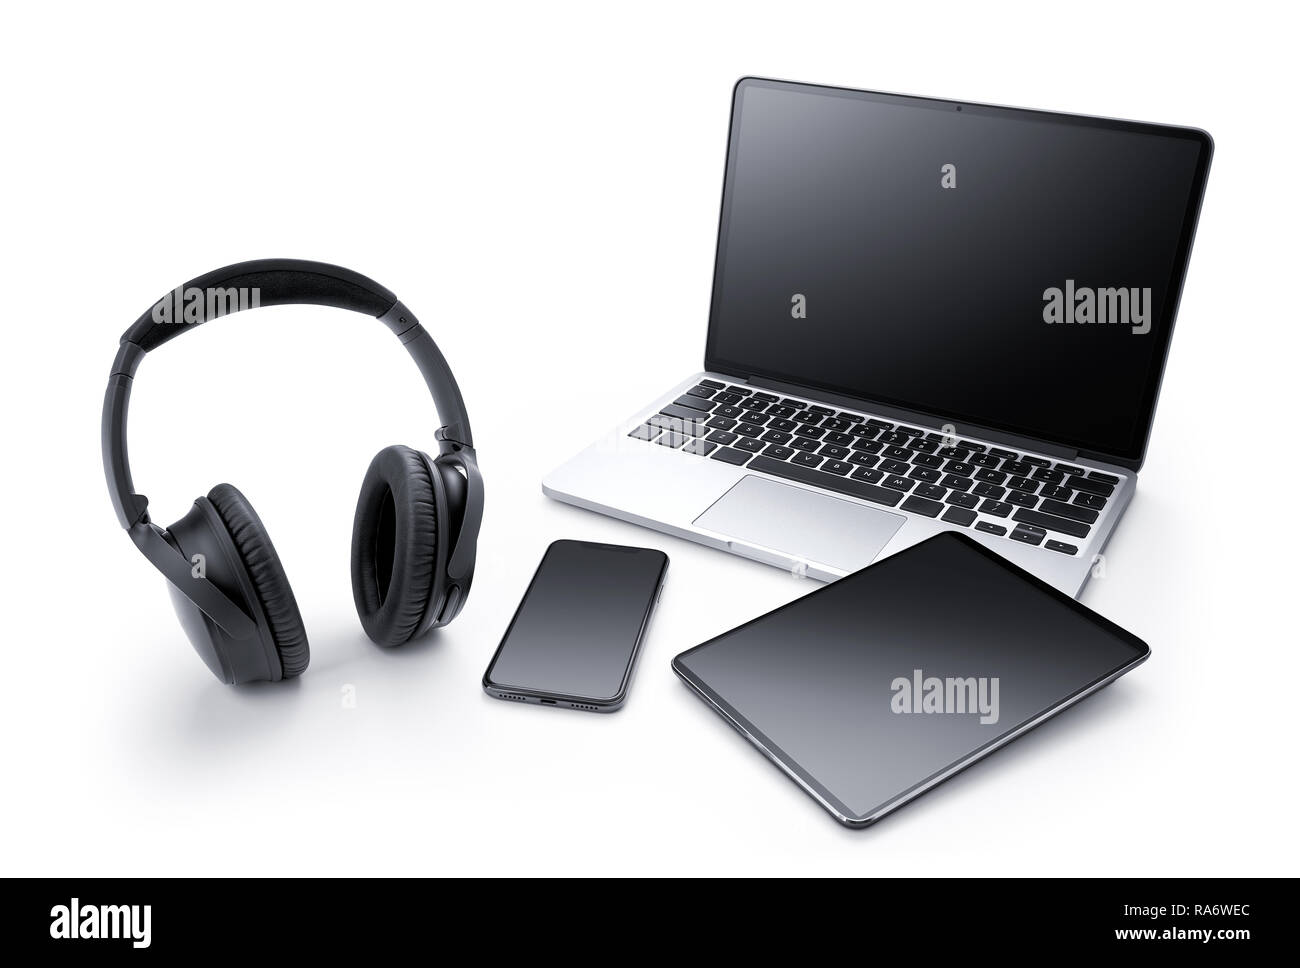 Appareil électronique - Ordinateur portable, tablette, smartphone et casque isolé sur fond blanc Banque D'Images